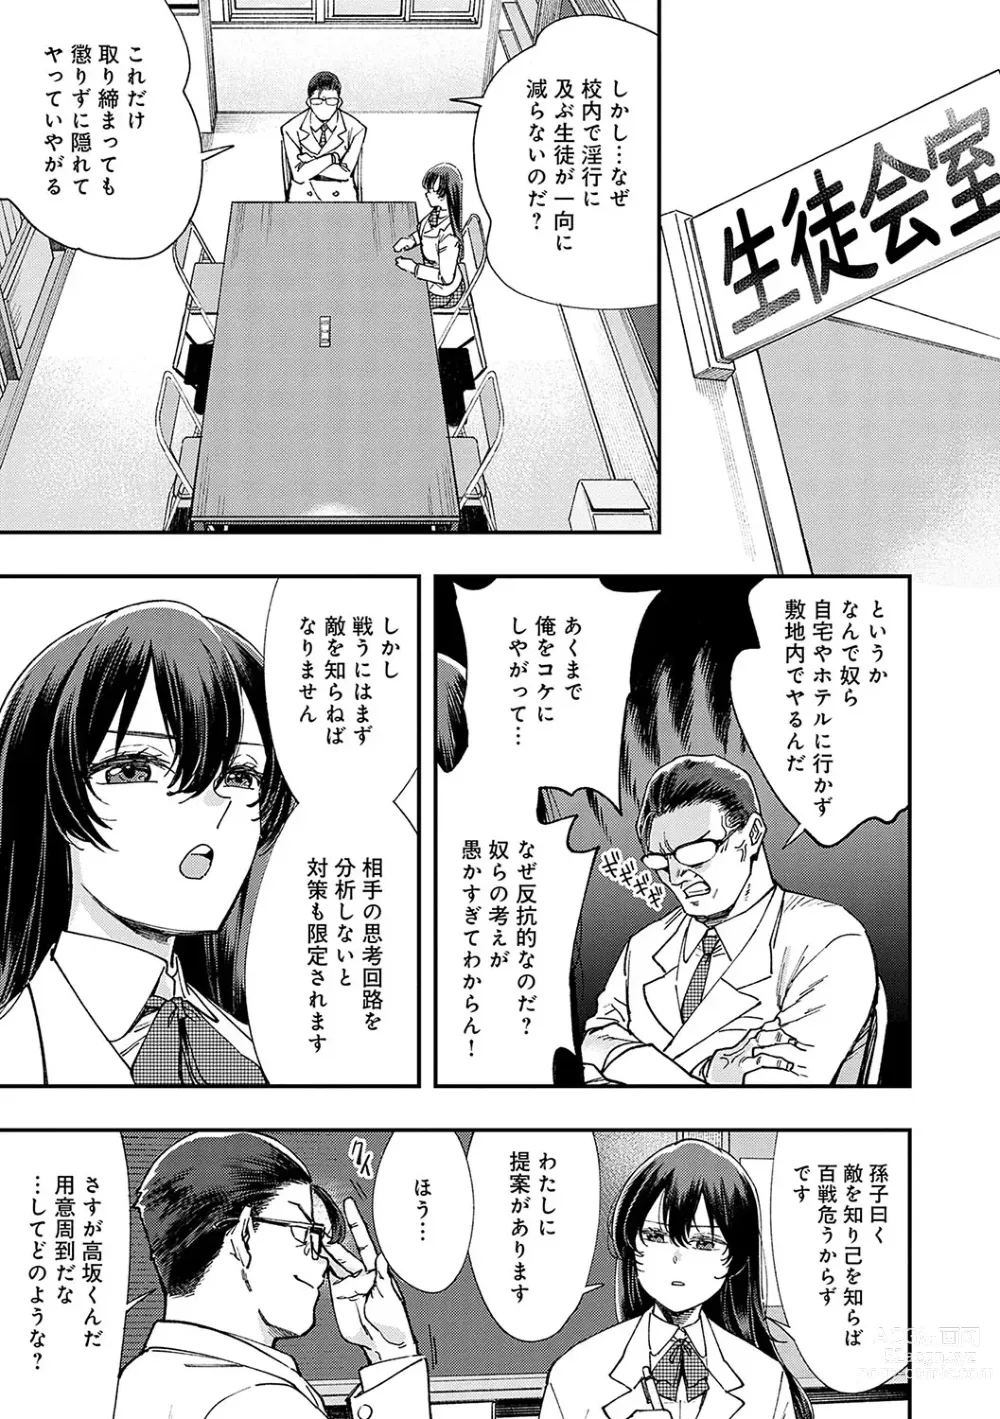 Page 10 of manga Kashikoi Oppai